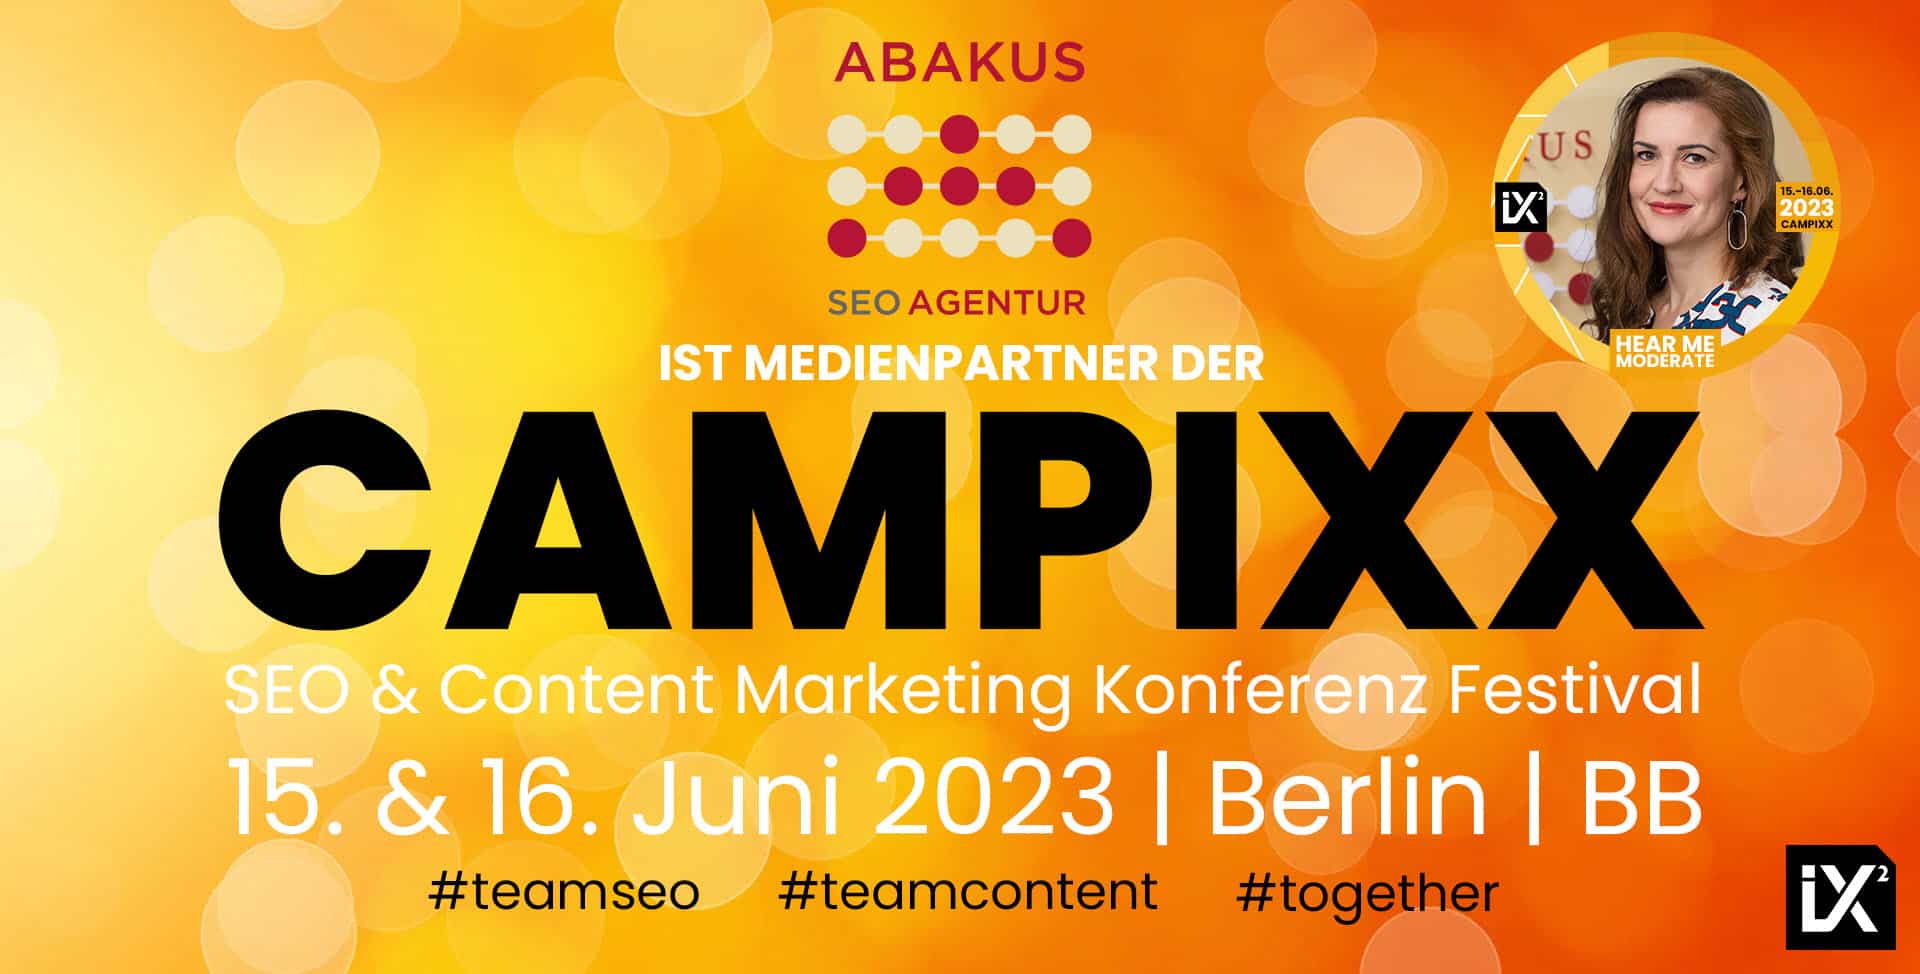 CAMPIXX 2023 am 15. und 16. Juni in Berlin Brandenburg mit SEO Agentur ABAKUS Internet Marketing GmbH